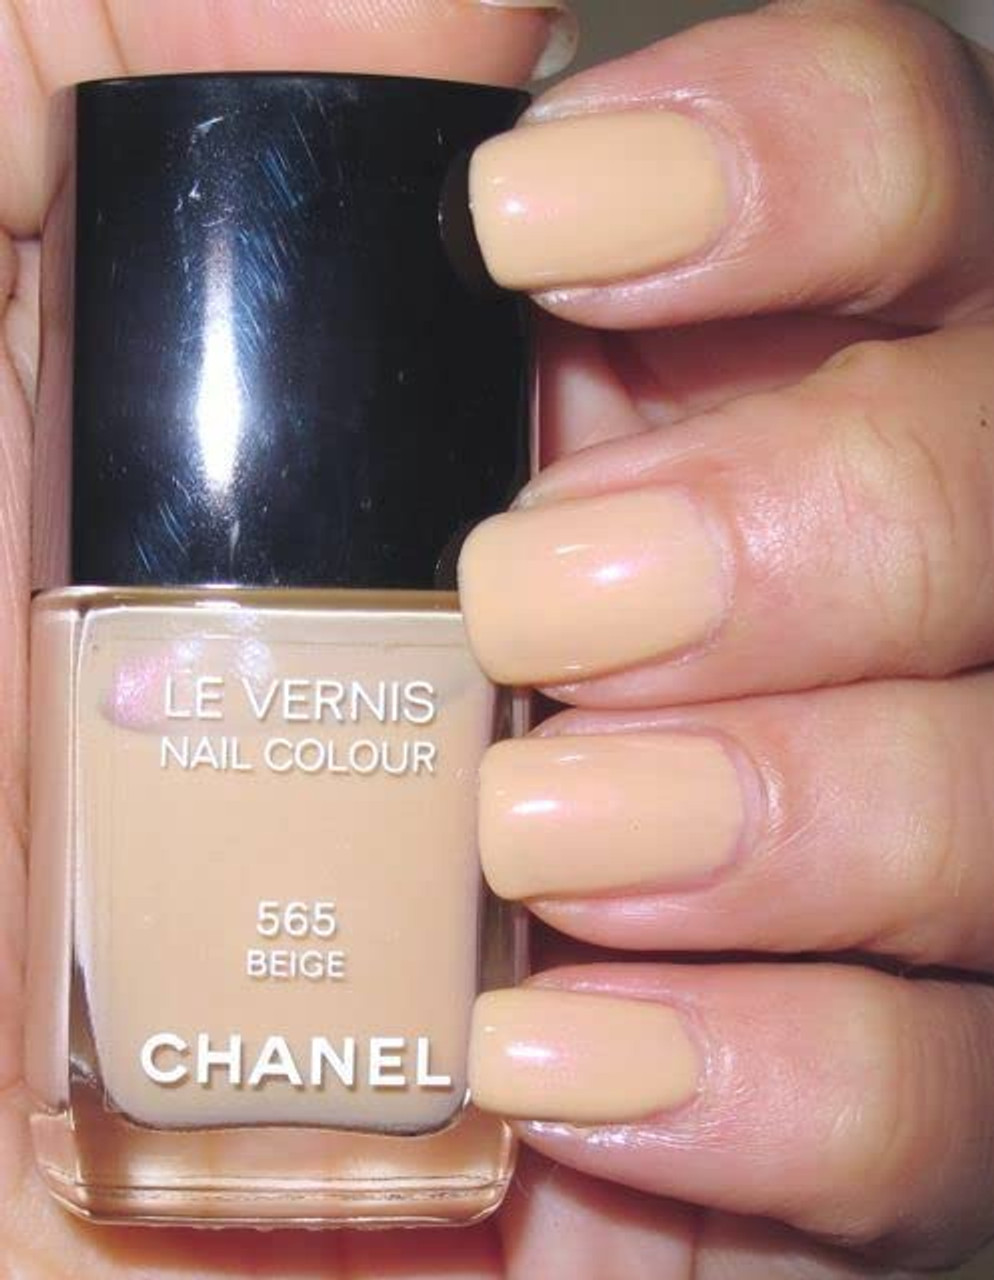 Chanel Le Vernis Nail Colour 565 Beige